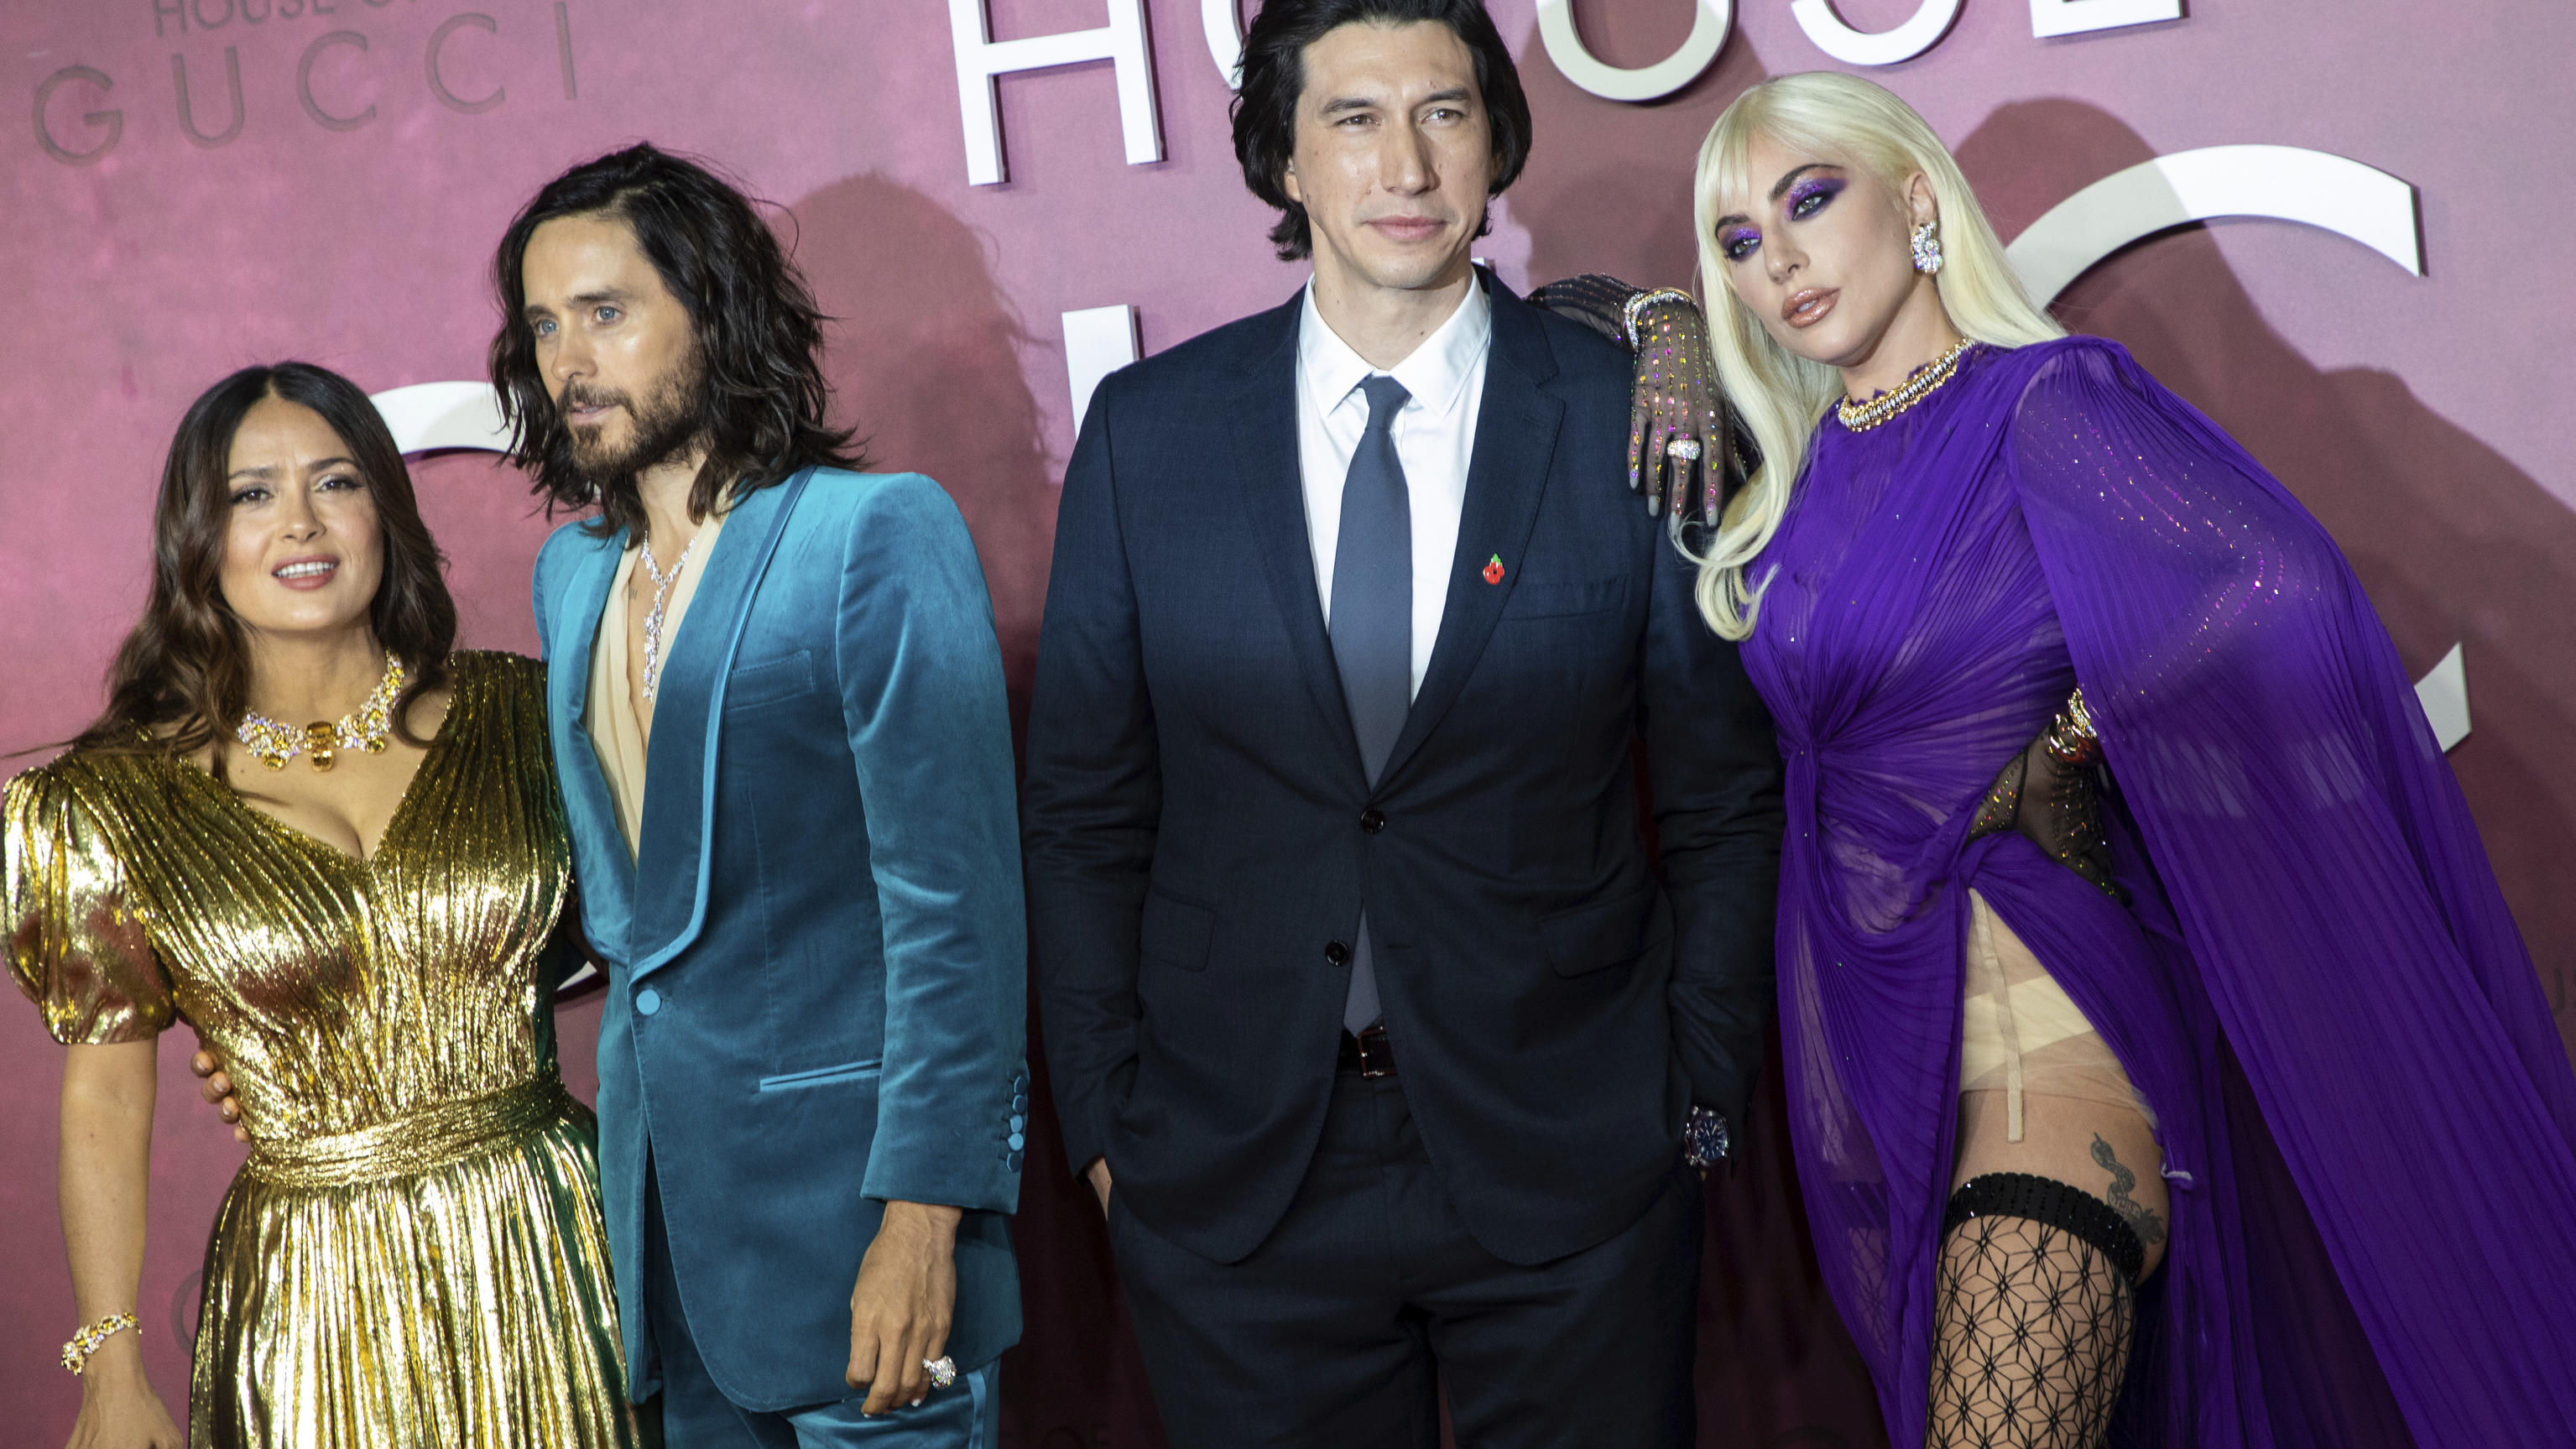 Lady Gaga zeigt bei der Weltpremiere von "House of Gucci", was sie unterm Kleid trägt. An ihrer Seite: ihre Co-Stars Salma Hayek , Jared Leto and Adam Driver.